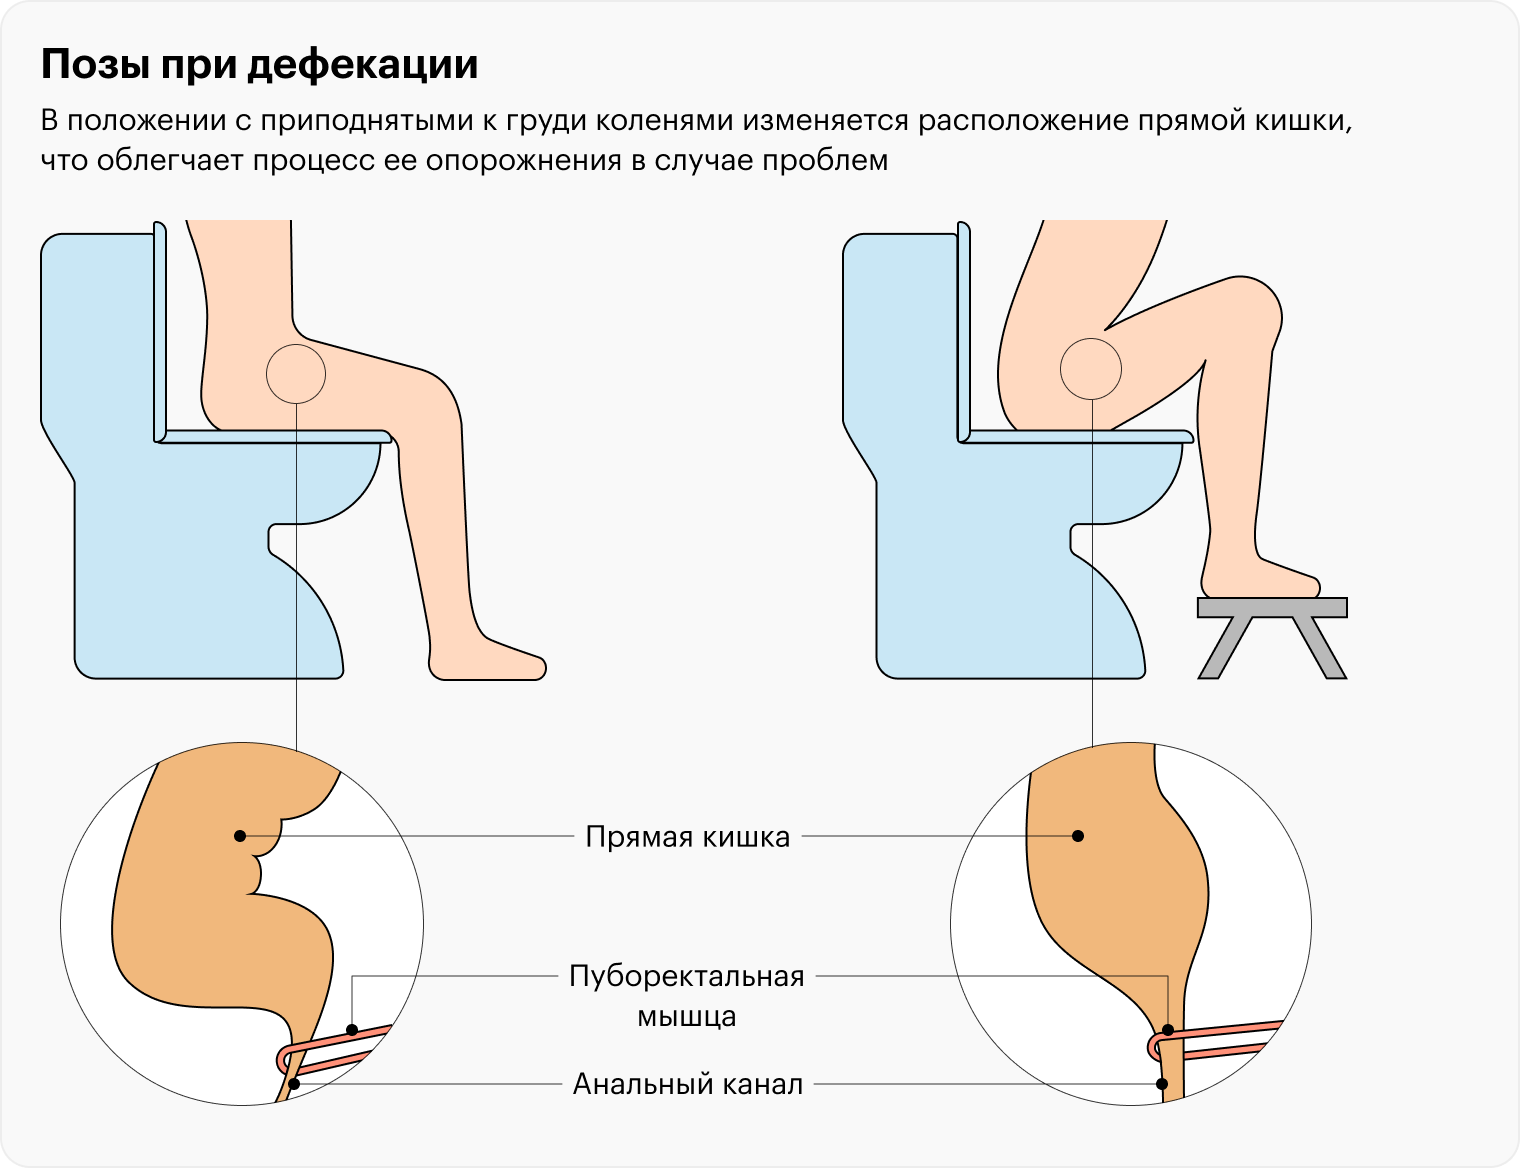 Более привычный способ сидения на унитазе не так сильно сглаживает аноректальный угол — в такой позе испражняться труднее, чем когда колени приподняты выше таза. Исправить это можно с помощью подножки — на «Яндекс-маркете» она стоит от 578 ₽